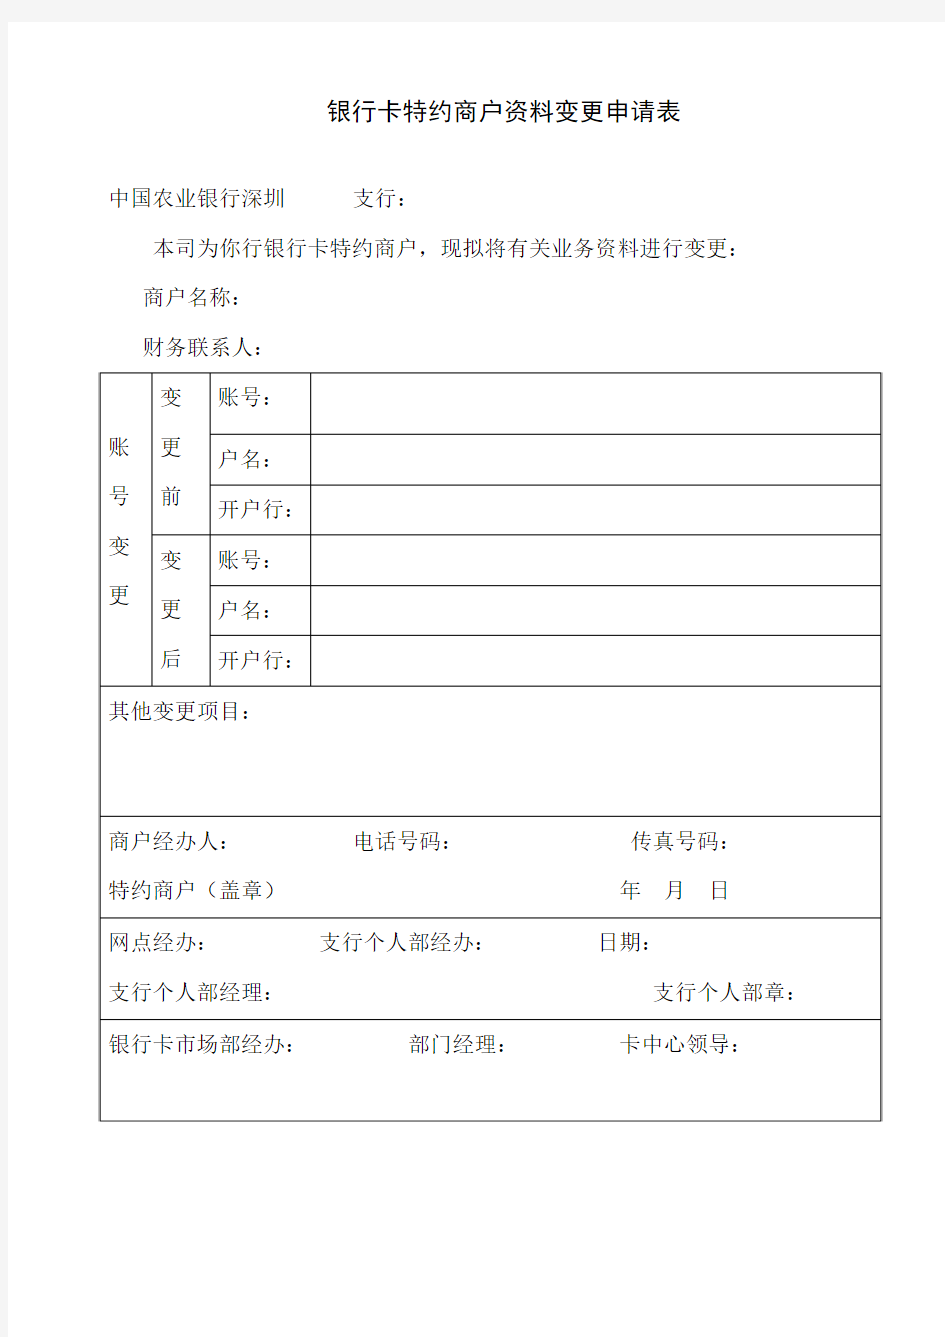 POS交易银行卡特约商户资料变更申请表(20120207)